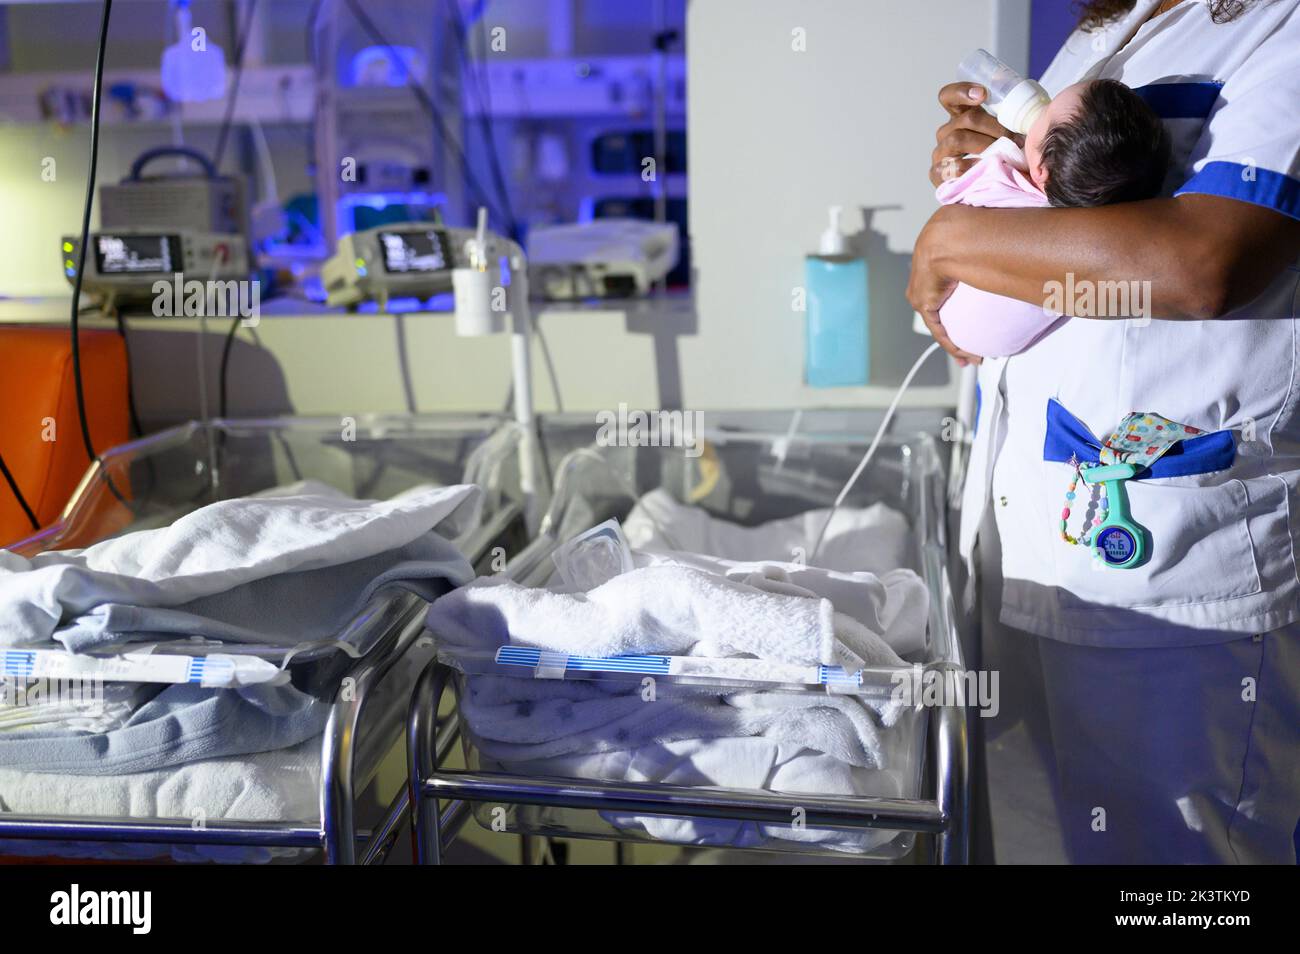 Vista lateral de la mujer de cultivo que lleva en la mano un pequeño recién nacido y la alimentación con biberón mientras está de pie junto a pequeñas camas de hospital contra el equipo médico en A. Foto de stock